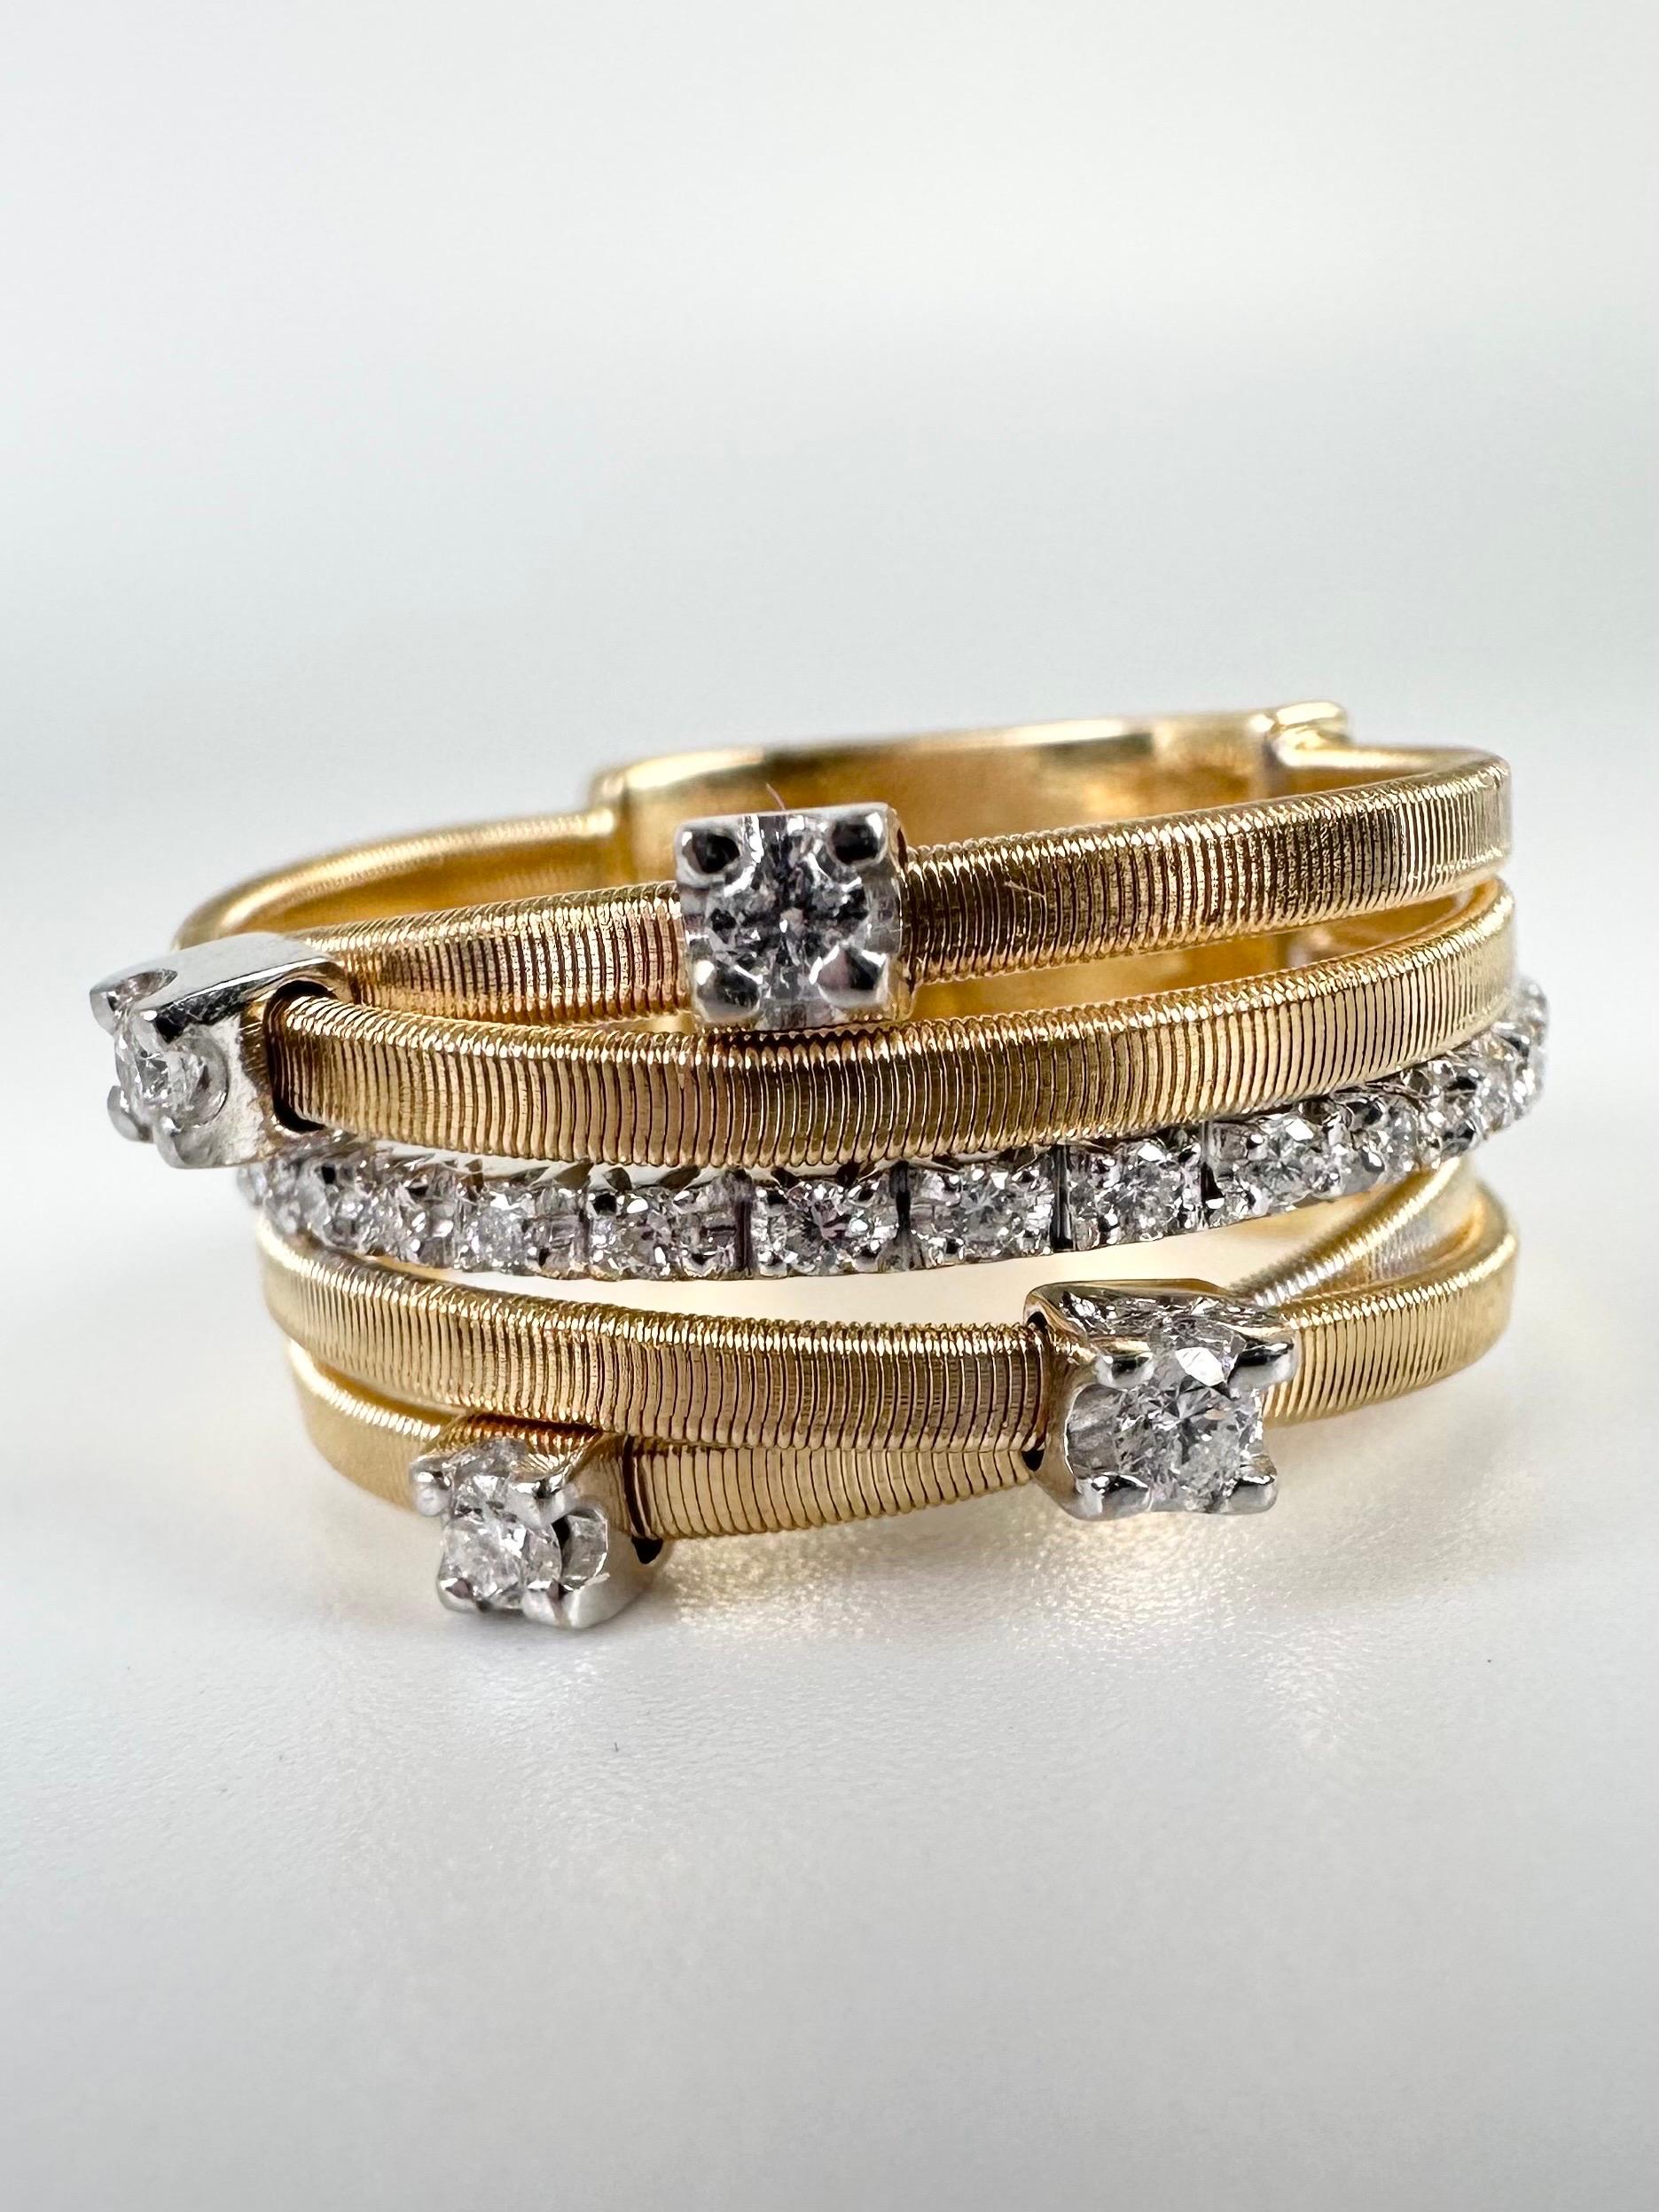 Einzigartiger 5-reihiger Diamantring von Bicego, die goldenen strukturierten Ringreihen mit plattierten Einsen machen diesen Ring zu einem einzigartigen Design, sehr modern mit einer verspielten Textur. Sieht auf der Hand fantastisch aus und ist